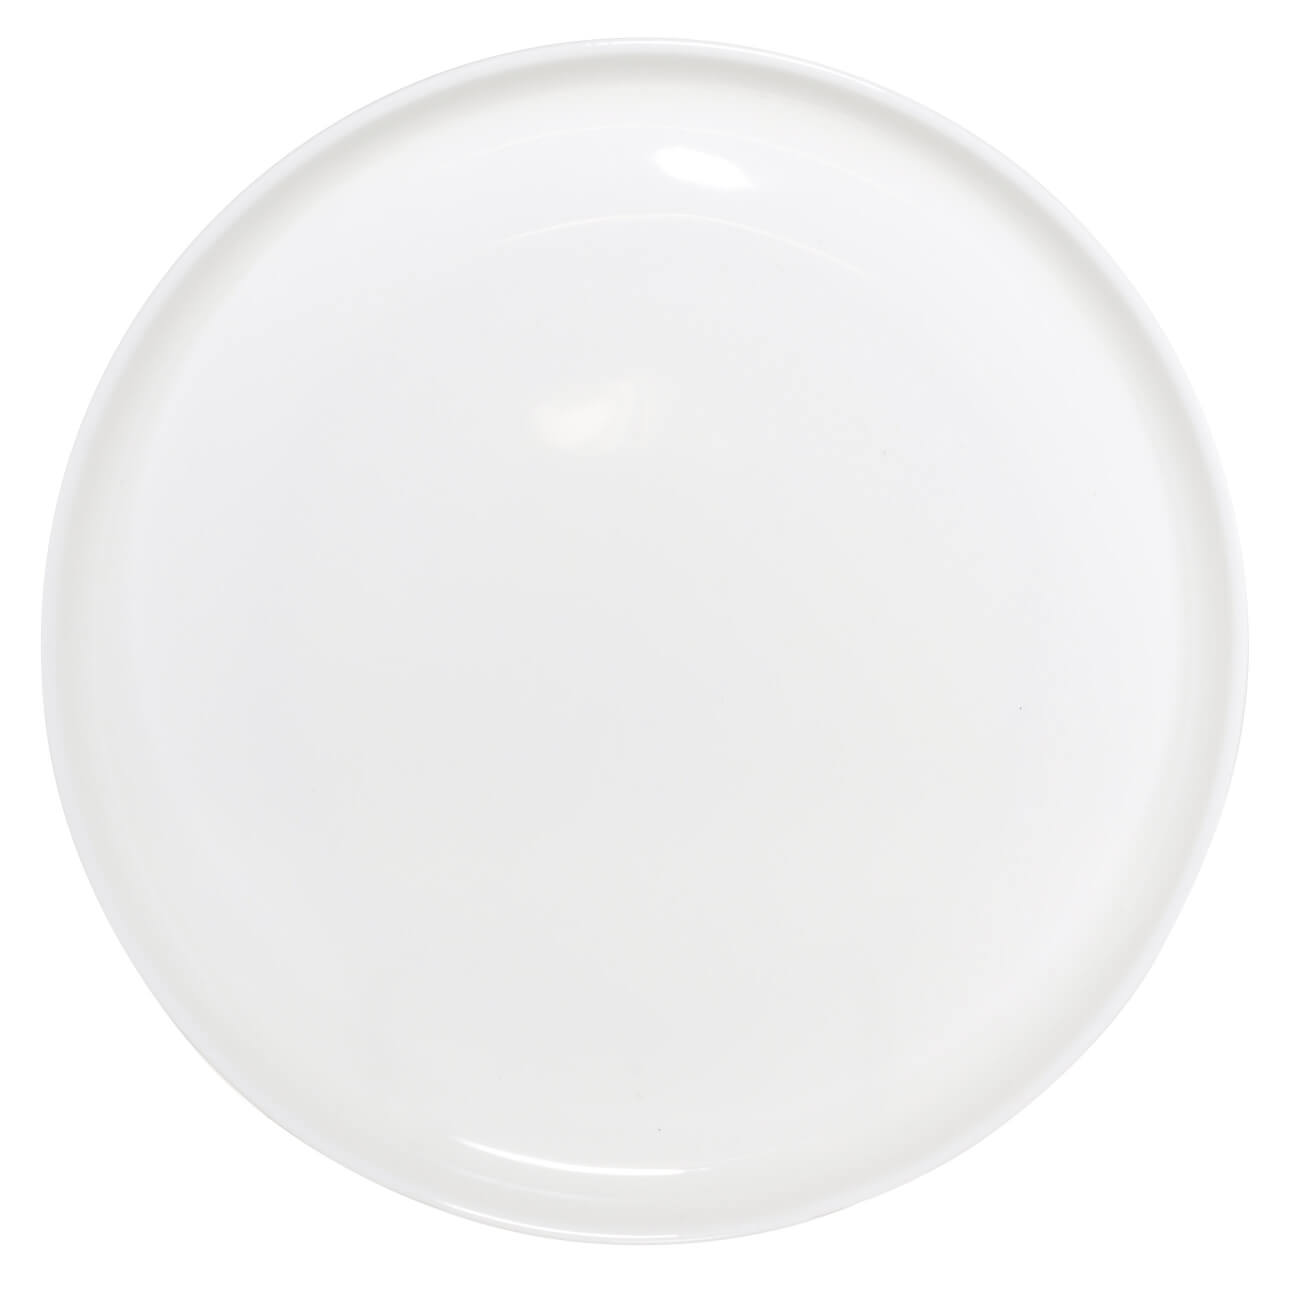 Тарелка обеденная, 26 см, фарфор F, белая, Ideal white изображение № 1